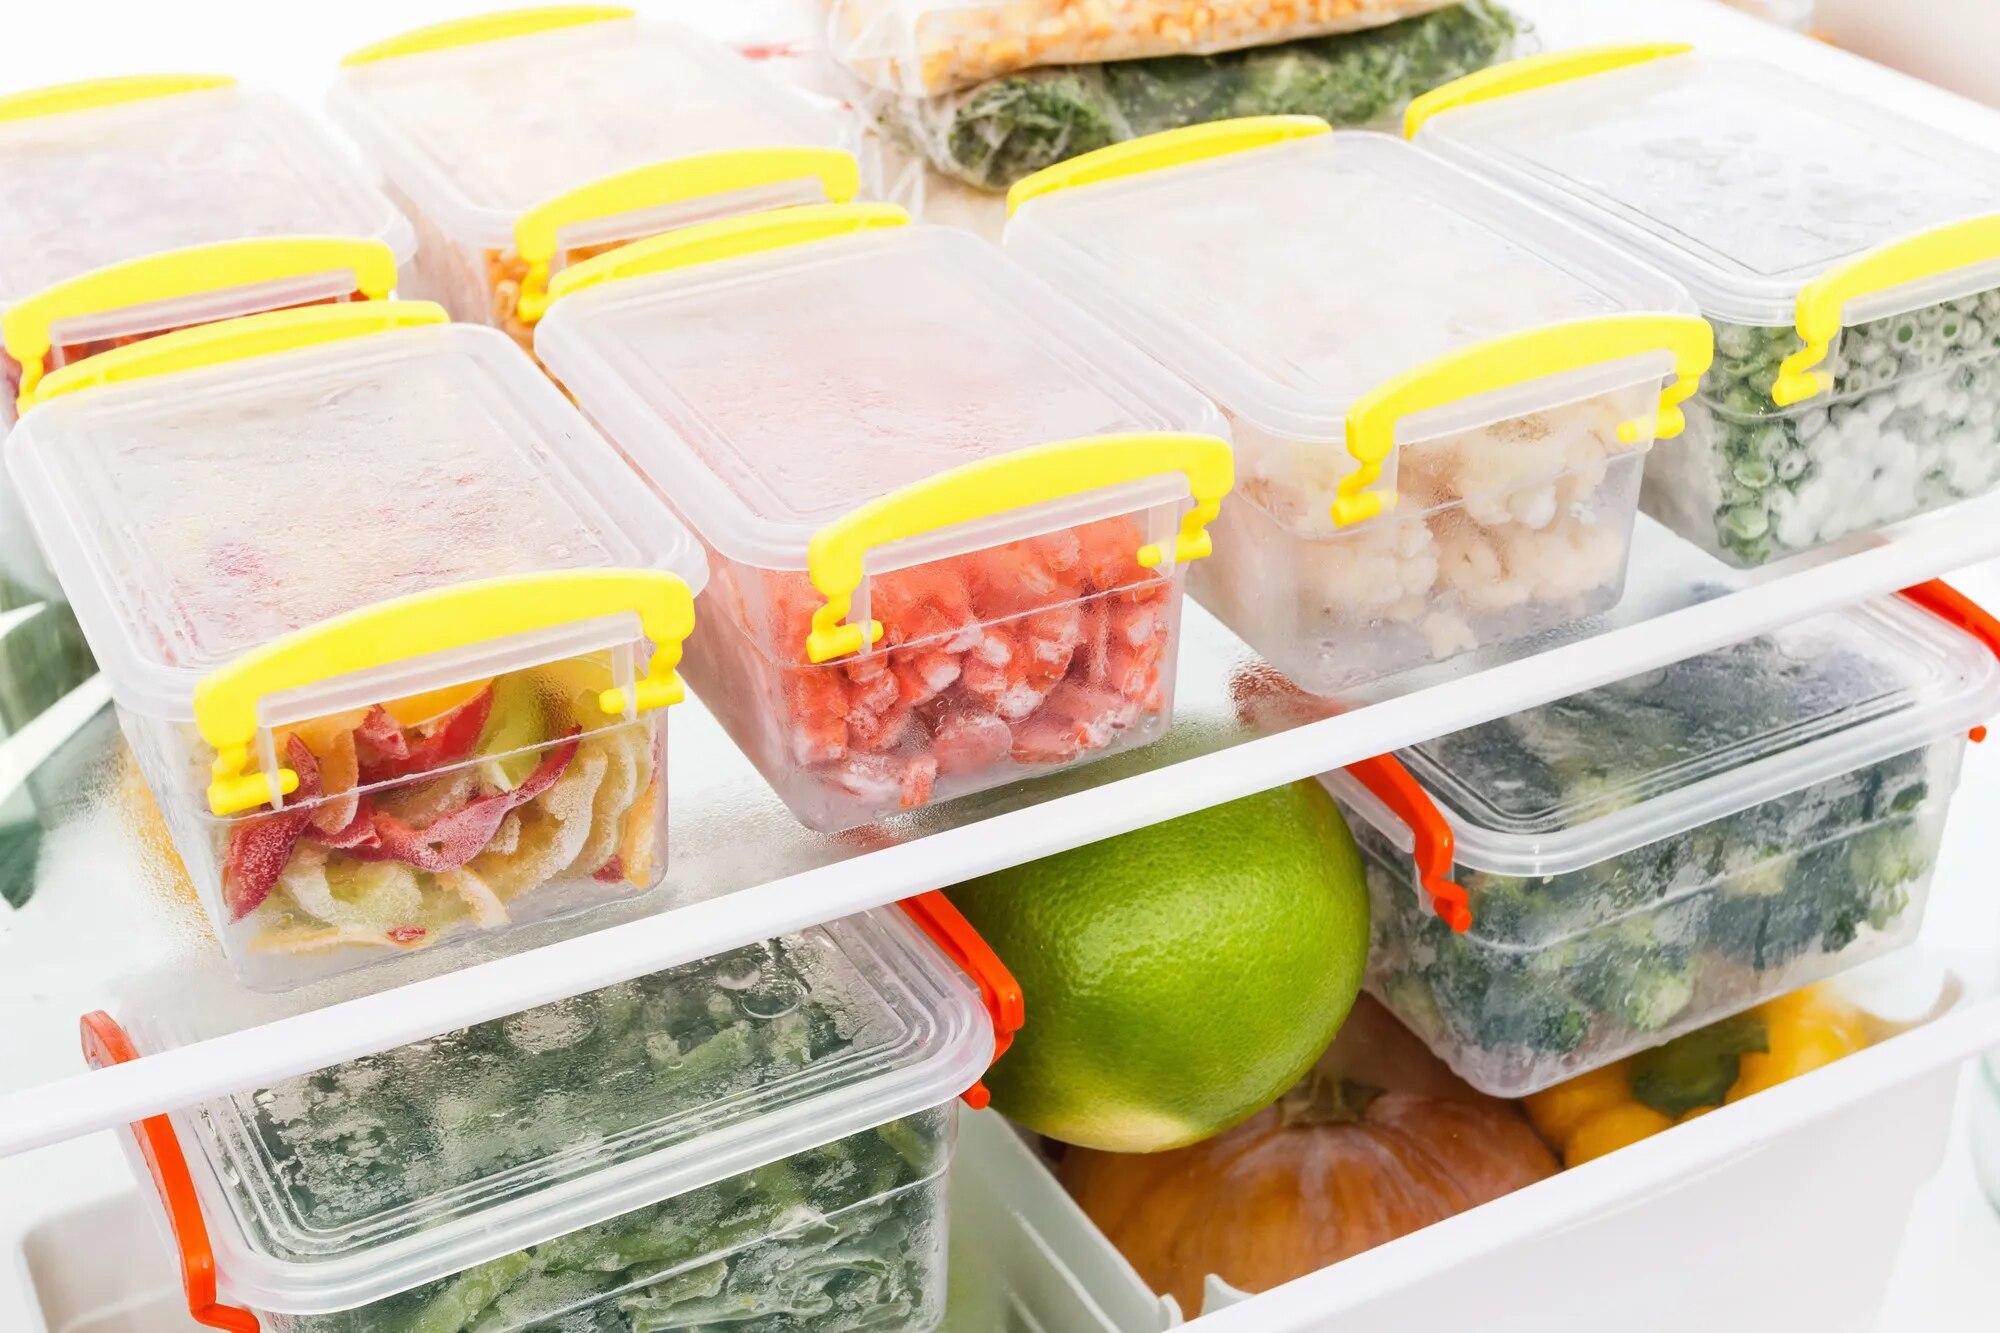 Vì sao thực phẩm bảo quản tủ lạnh vẫn có nguy cơ gây ngộ độc? - Ảnh 1.